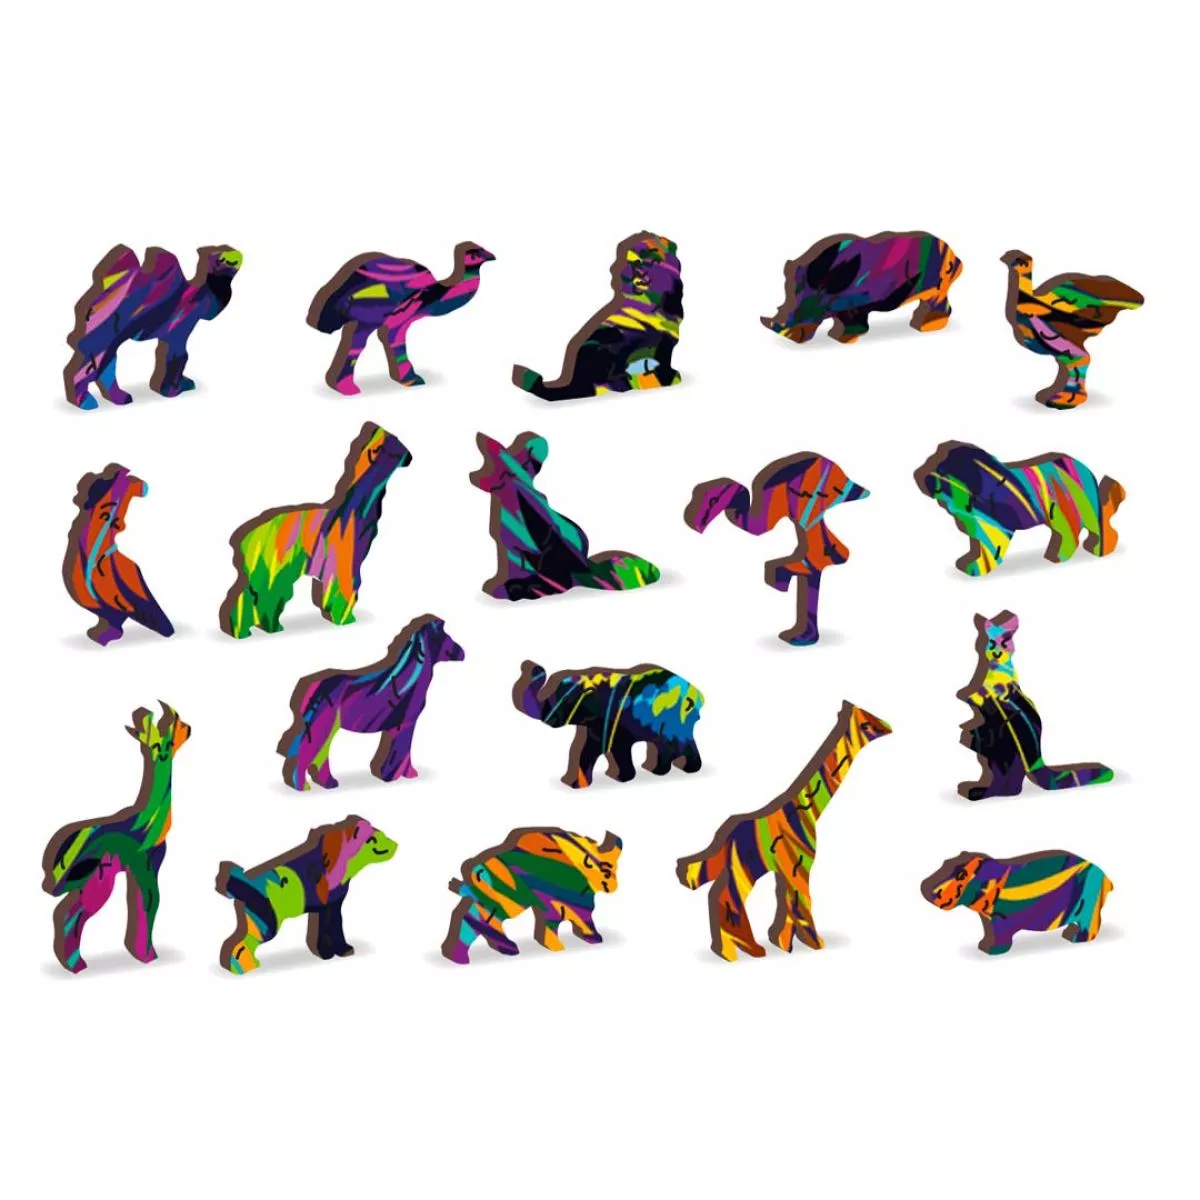 Farbenfrohes Holz-Puzzle "Regenbogen-Katze" – 140 Teile in 20 Formen